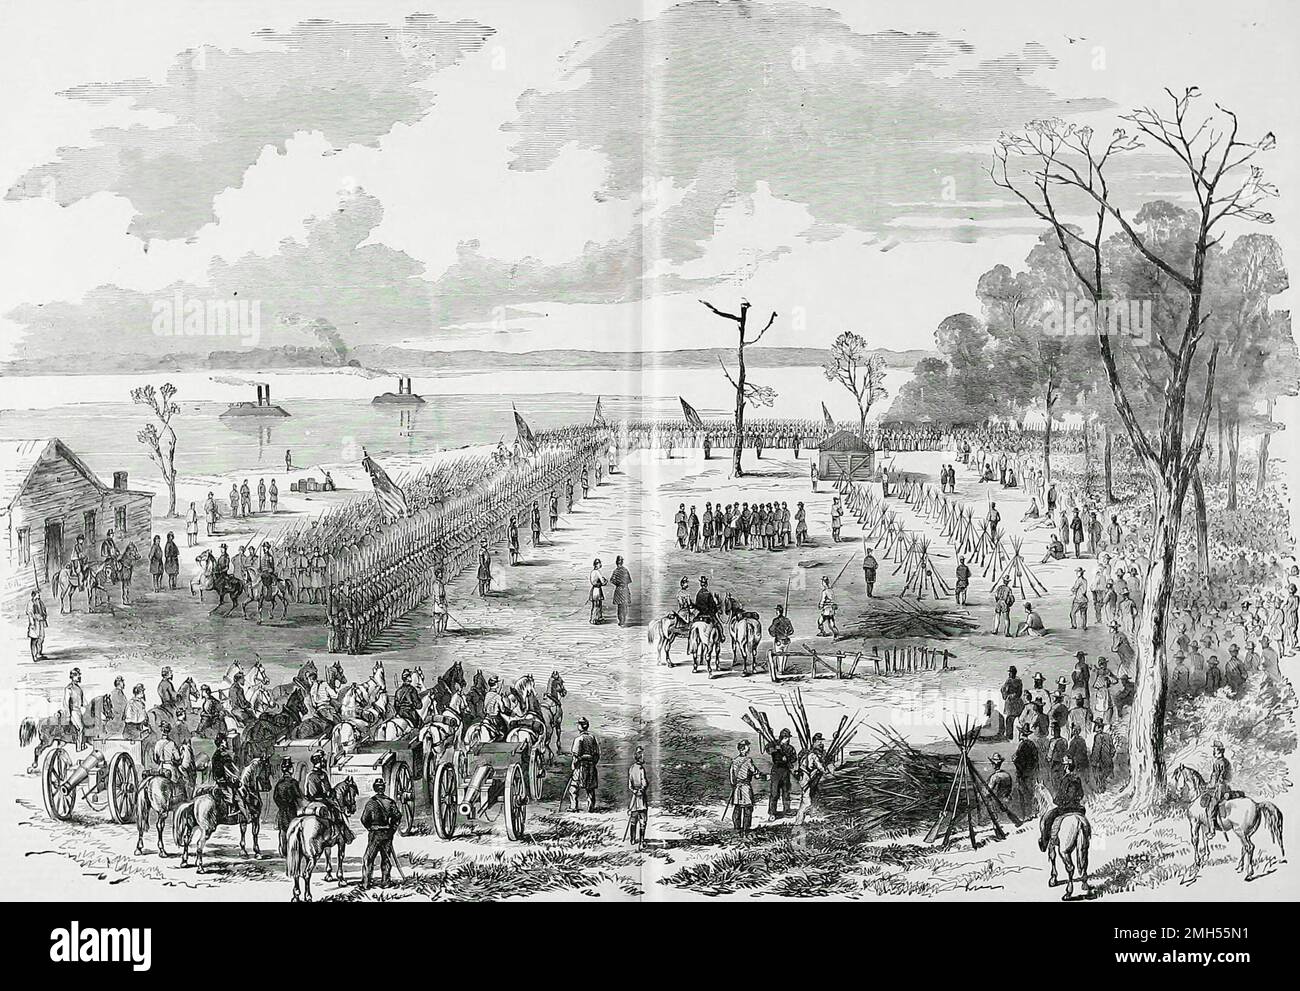 La Batalla de la Isla Número 10 fue una batalla en la Guerra Civil Americana que se libró el 28th de febrero-abril de 8th 1862 en Kentucky. Fue un ataque anfibio unionista en la isla número 10 que ocupó una posición de mando en el río Mississippi. El asalto estuvo bajo el mando de John Pope, y fue una victoria unionista cuando la isla fue capturada. La imagen muestra la rendición de las Fuerzas Confederadas, cinco mil fuertes, bajo los generales McCall y Gantt, al general Paine, en Tiptonville, Tenn., abril de 8th 1862. Foto de stock